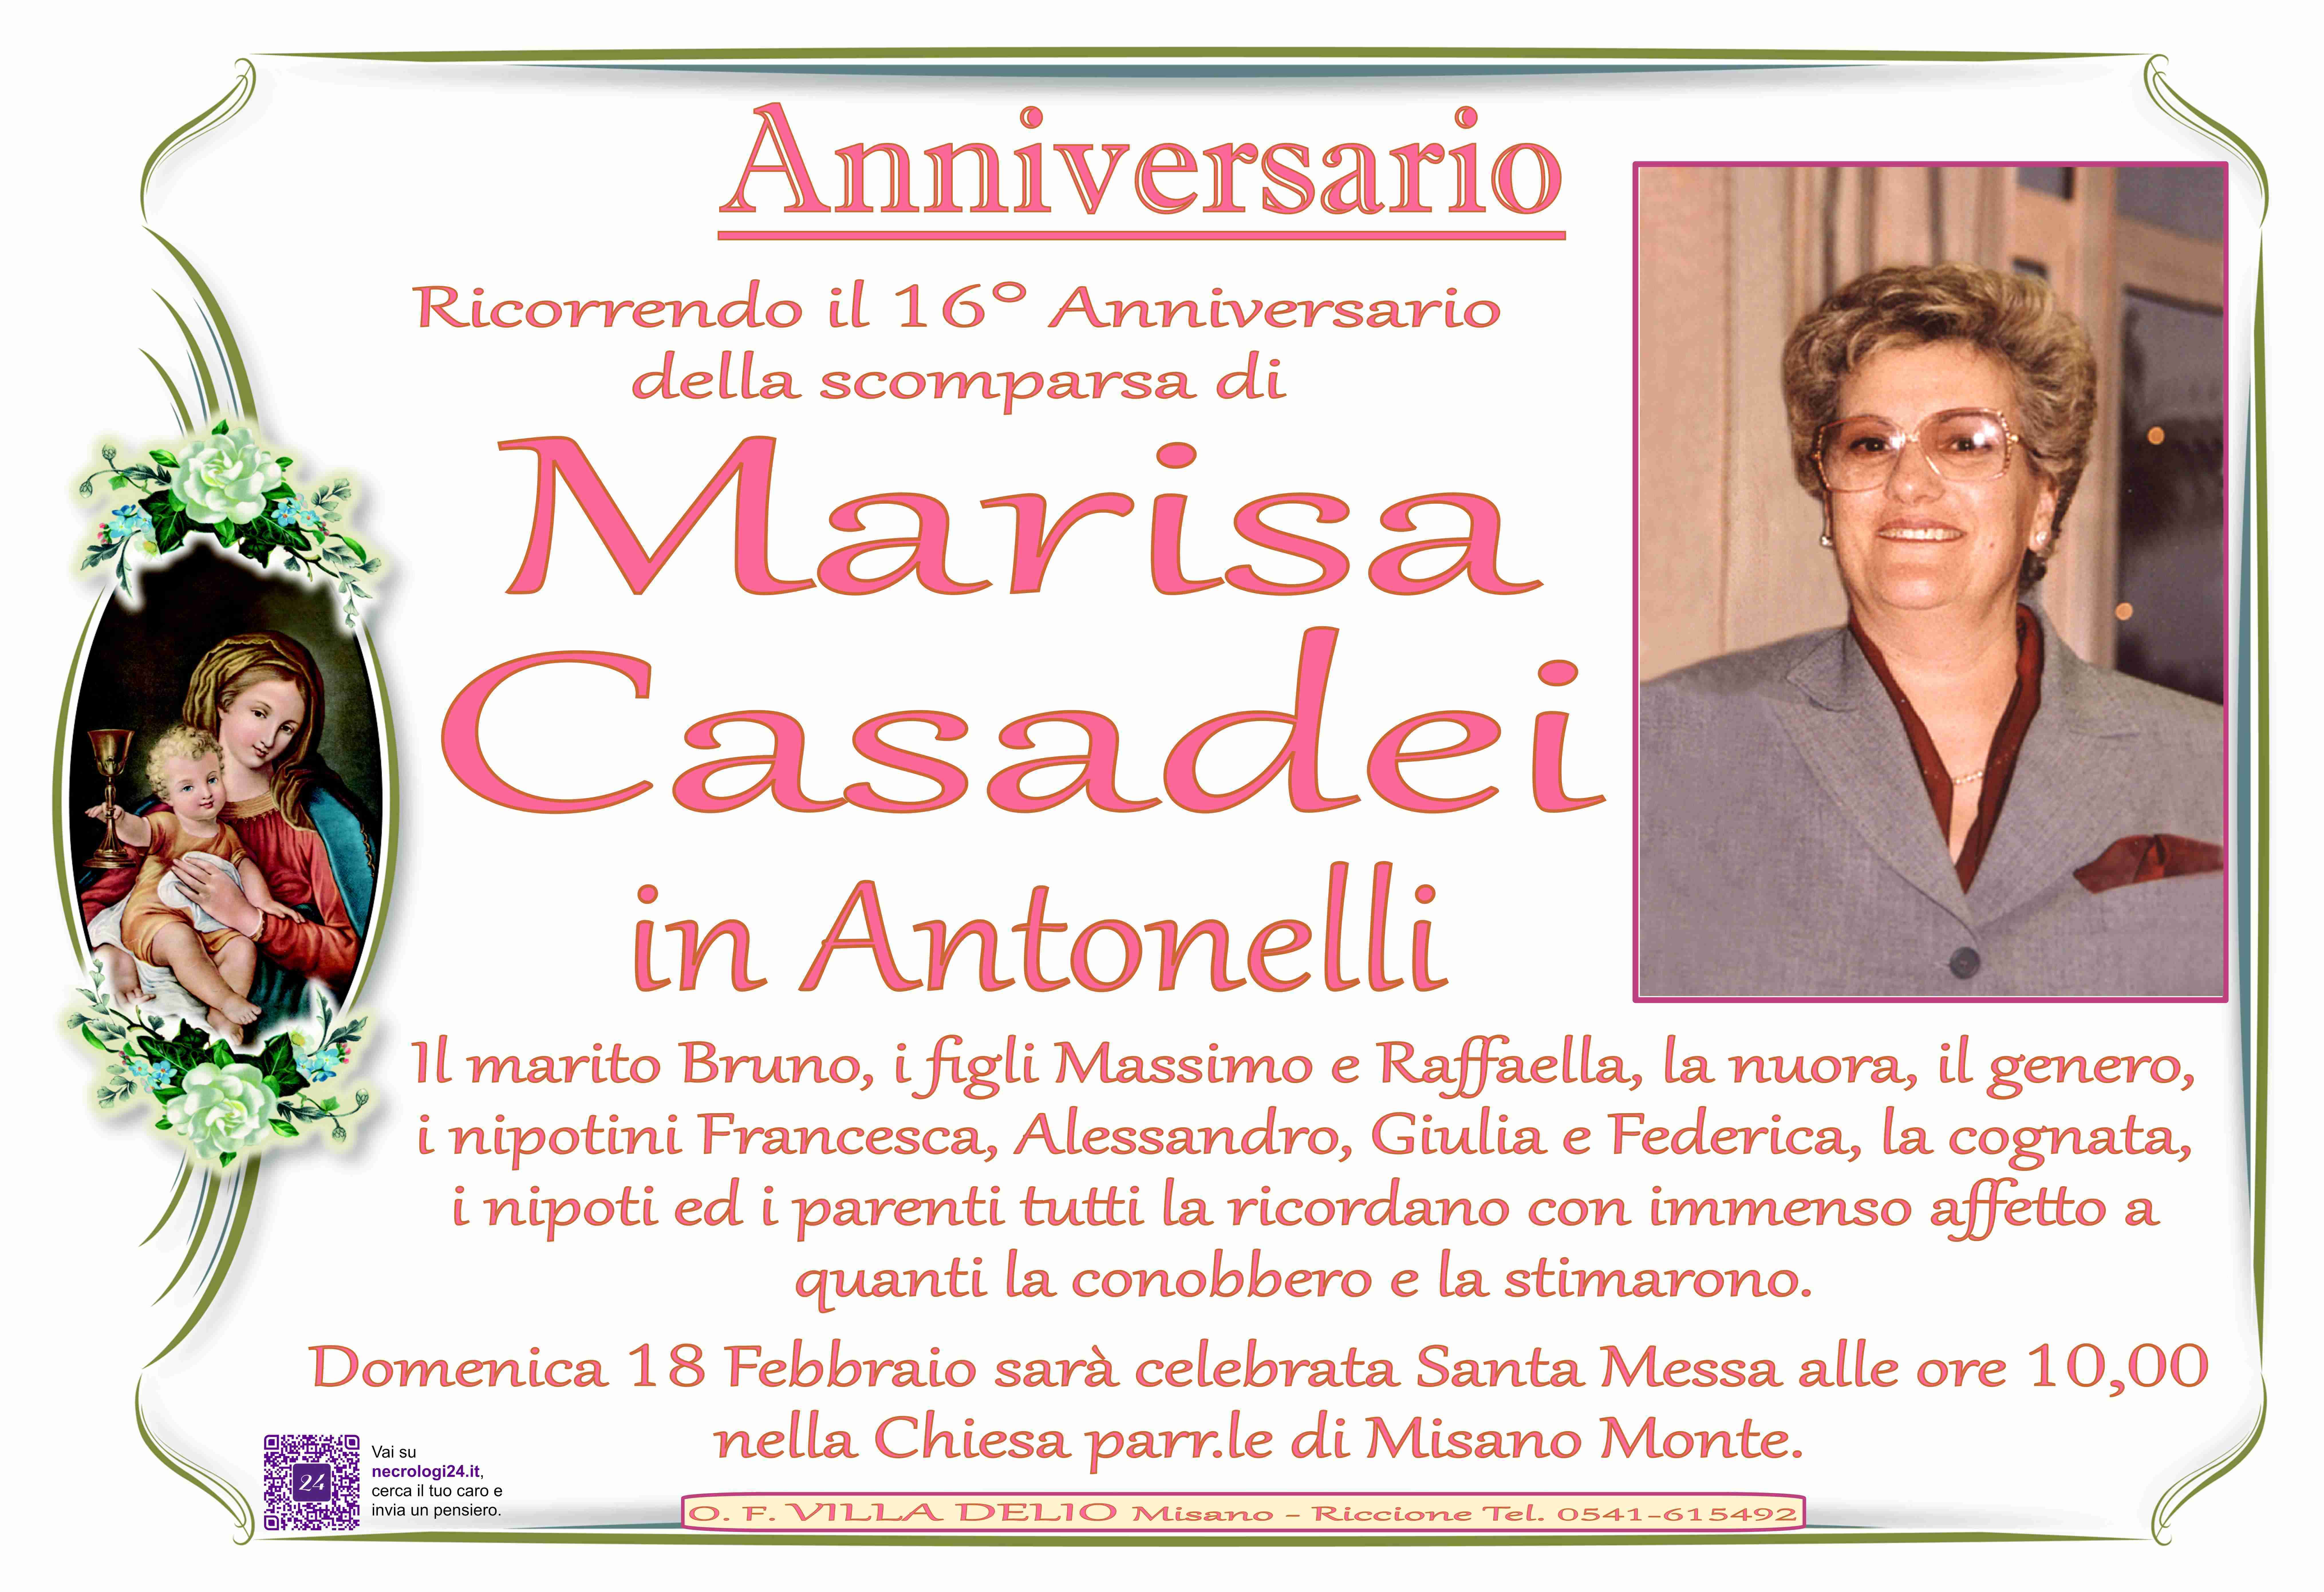 Marisa Casadei in Antonelli